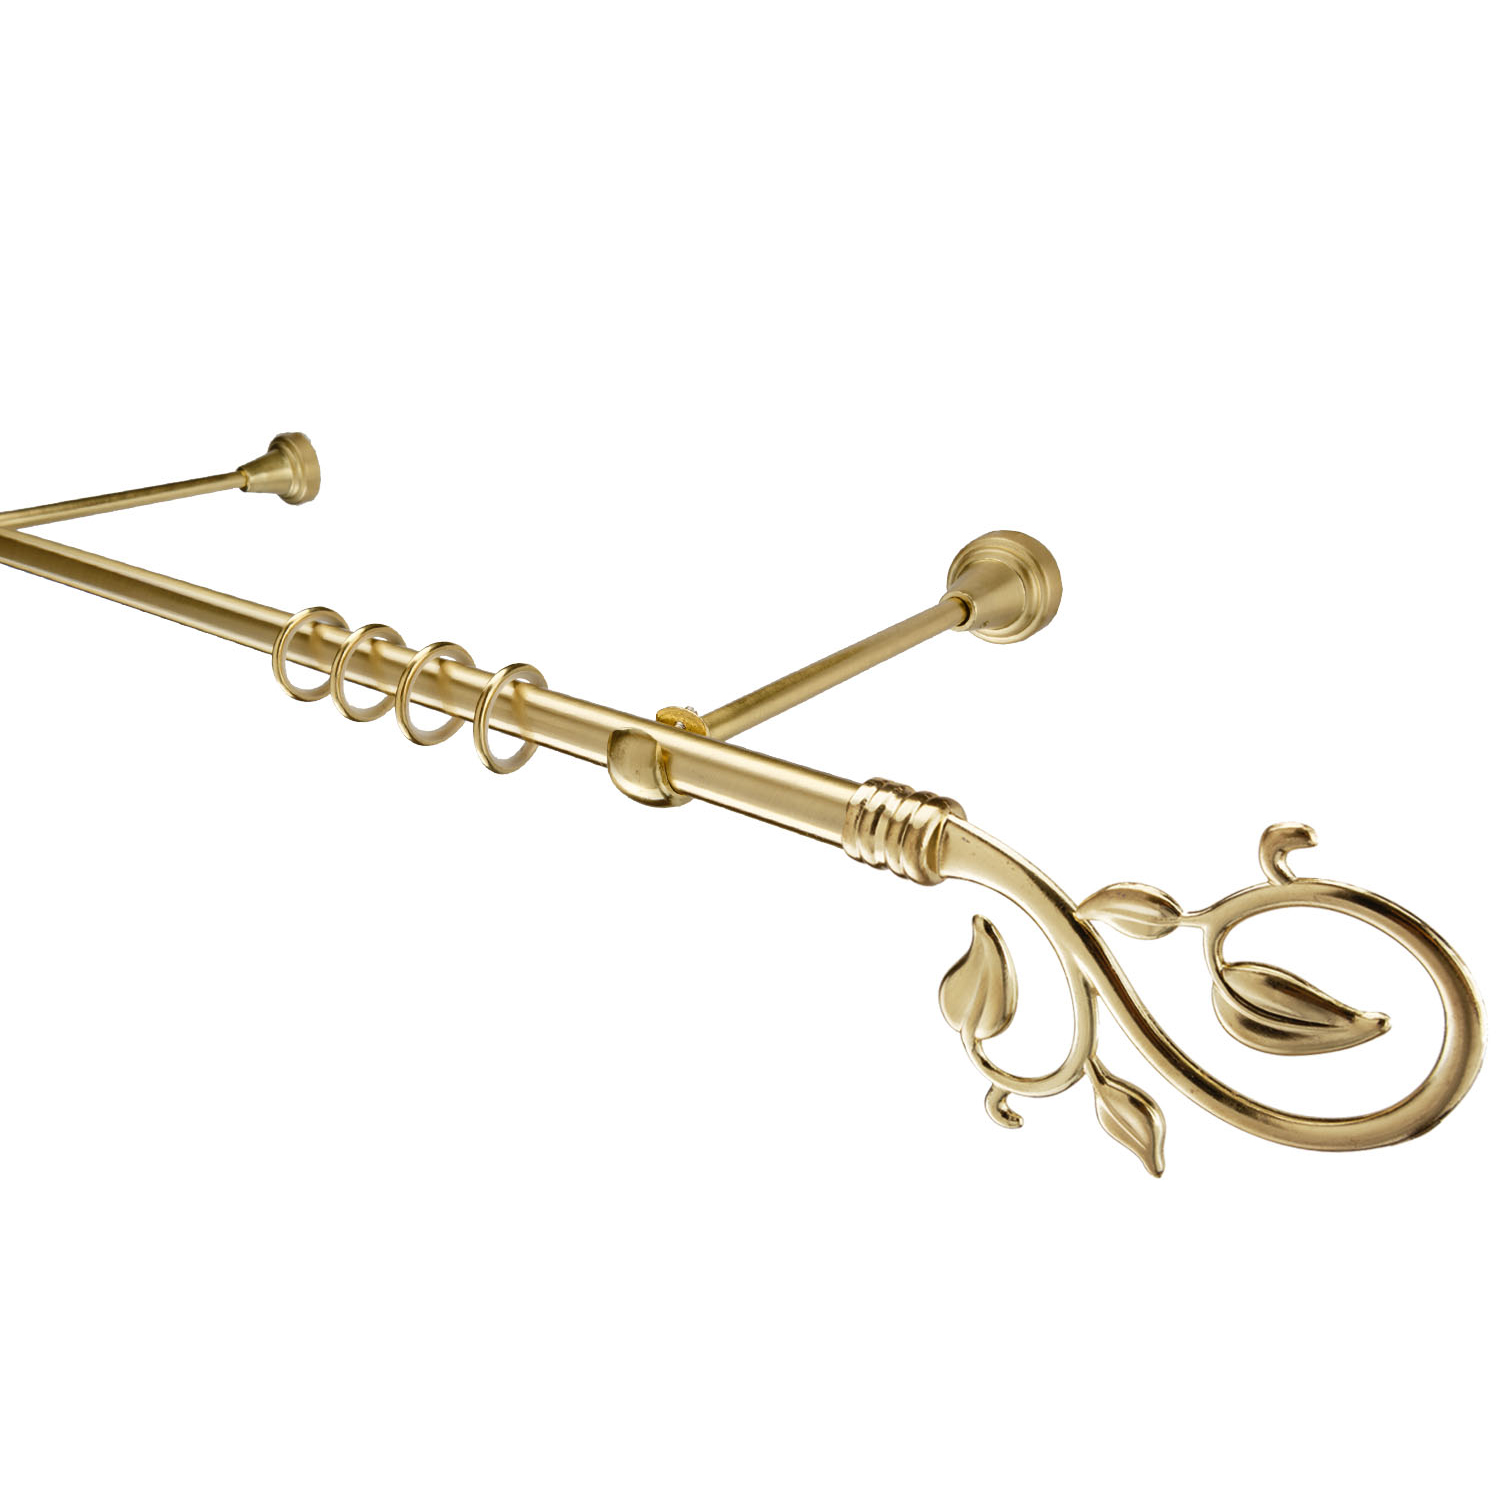 Металлический карниз для штор Амели, однорядный 16 мм, золото, гладкая штанга, длина 300 см - фото Wikidecor.ru